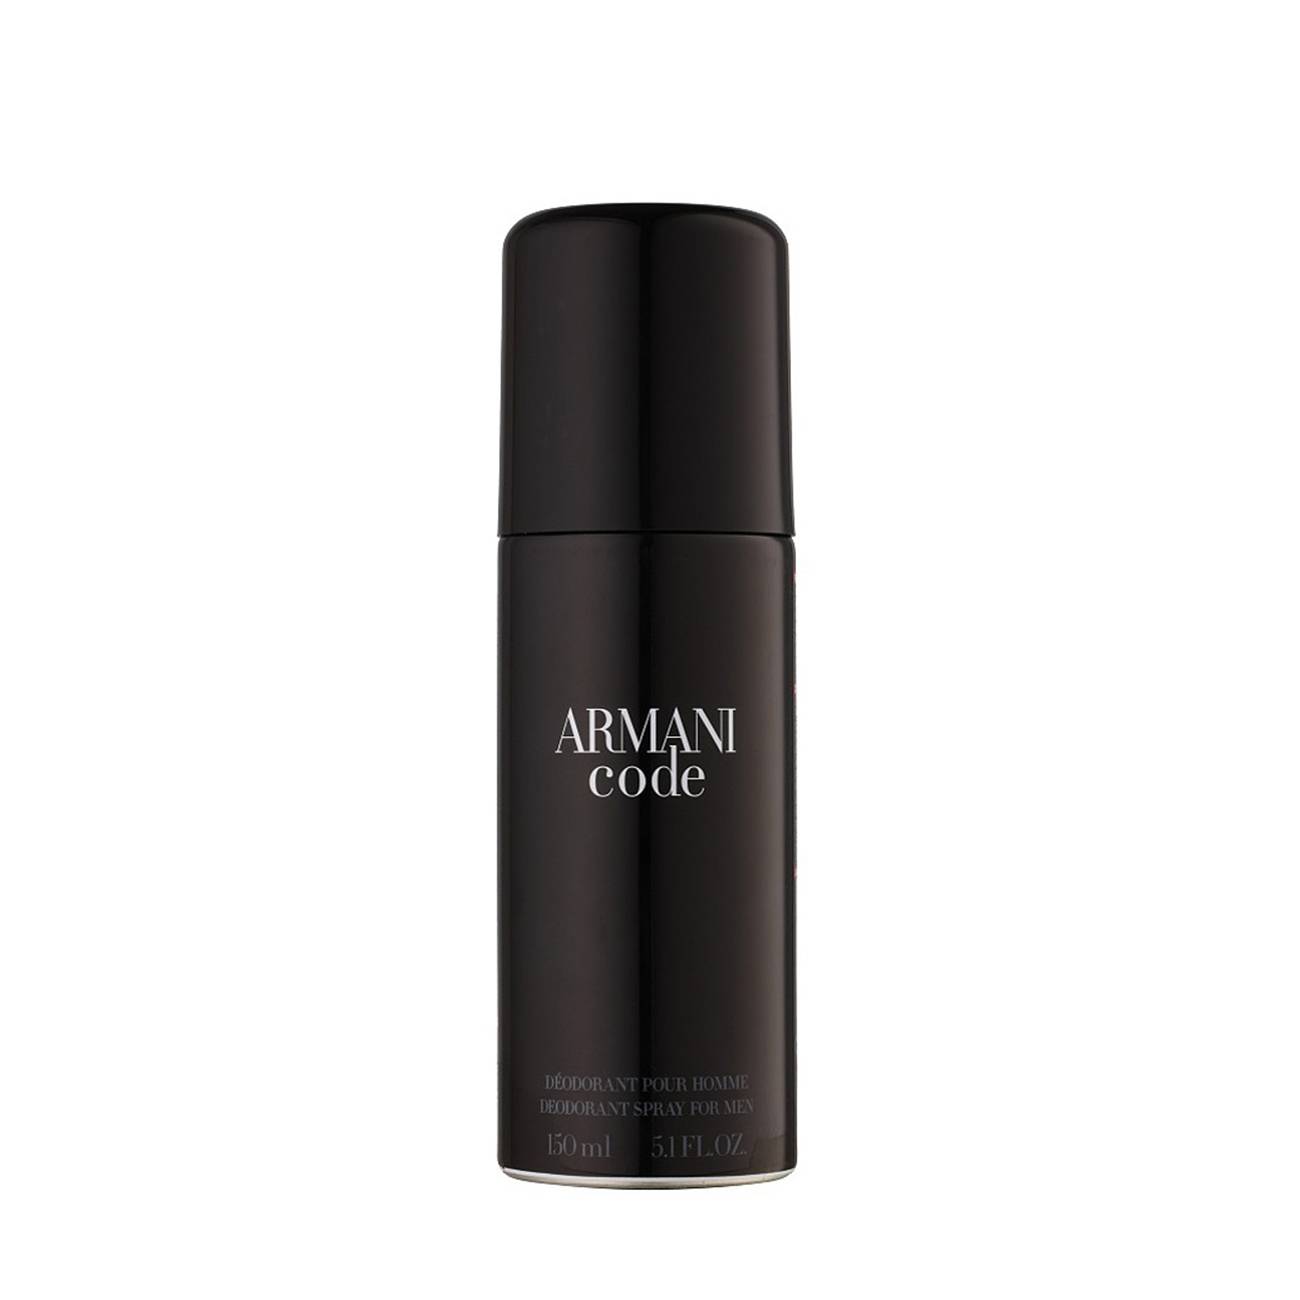 Armani Code Spray 150 ml original Giorgio Armani 150